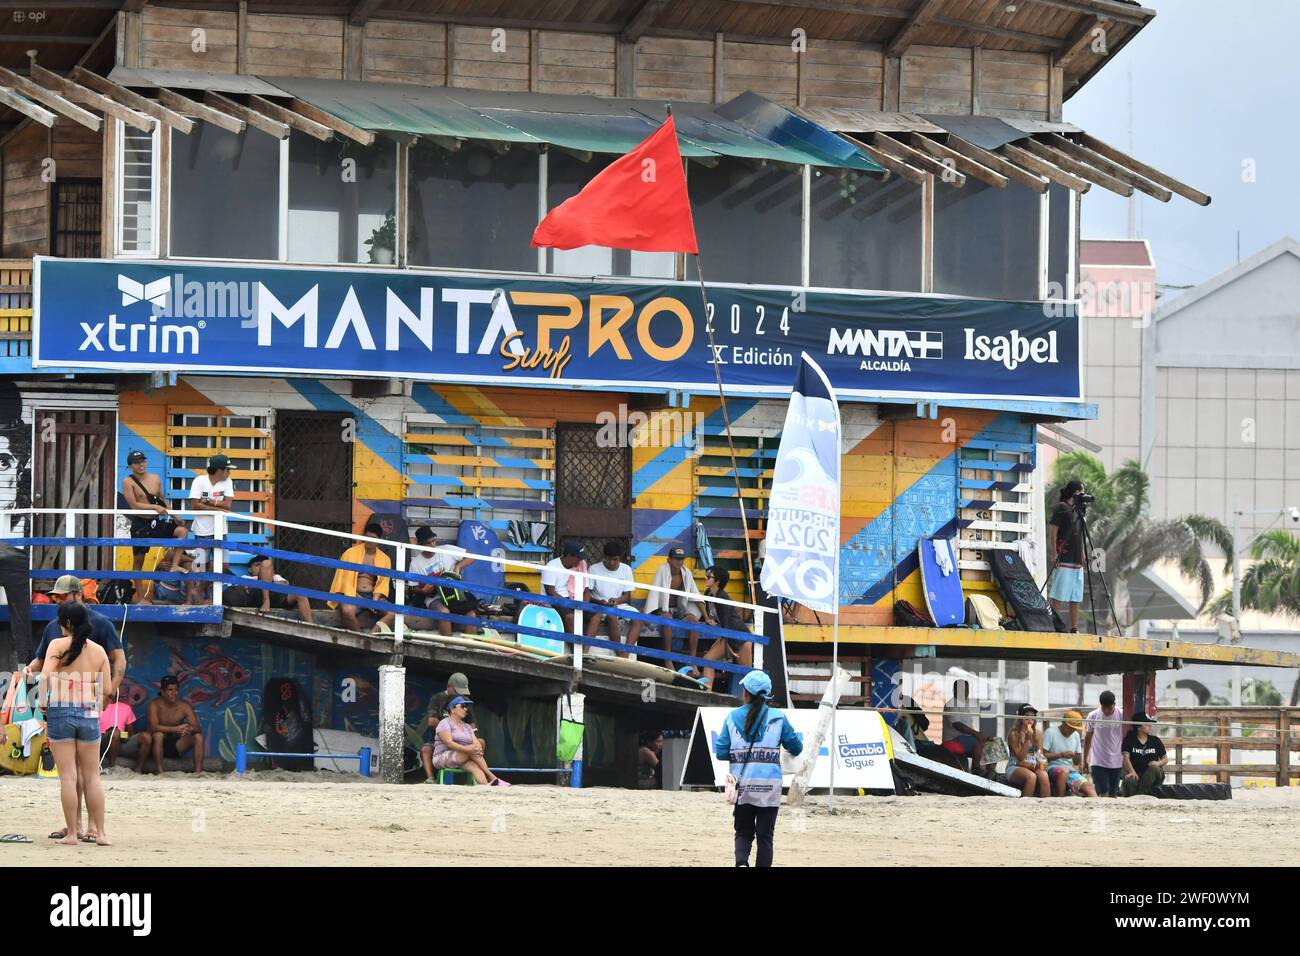 MANTA-SURF-TURISMO-EMERGENCIA-NACIONAL Manta, 27 de enero de 2023. Tras la emergencia de seguridad nacional y el Estado de Excepcion, las playas de Manta de a poco retoman una Mayor presencia de turistas. TambiÃ n se lleva a cabo la primera edicion del Manta Pro Surf 2024, organisado por la Liga Pro de Surf y que espera llevar esta competencia a diferentes playas de Ecuador. API / Ariel OCHOA Manta Manabi Ecuador SOI-MANTA-SURF-TURISMO-EMERGENCIA-NACIONAL-f7f34cb2fc9dced8120cdbddbdbb6bb5f *** MANTA SURF TOURISMUS NATIONALE NOTFALL Manta, 27. Januar 2023 nach dem nationalen SICHERHEITSNOTSTAND und Stockfoto